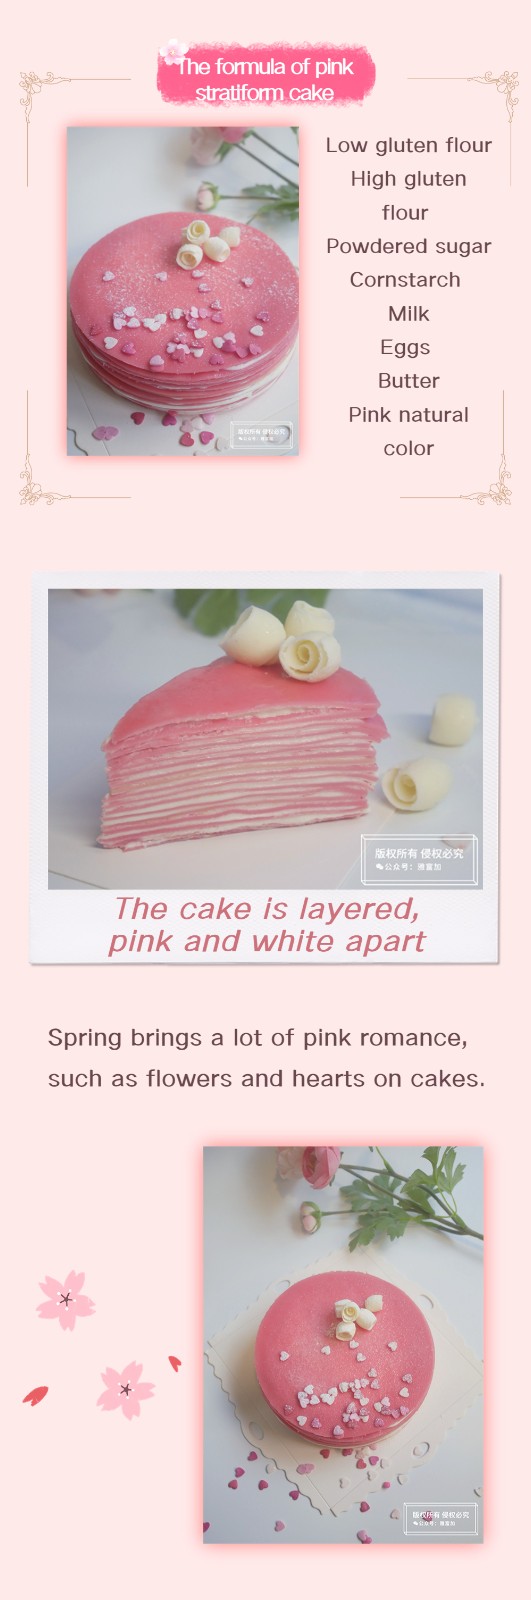 pink baking